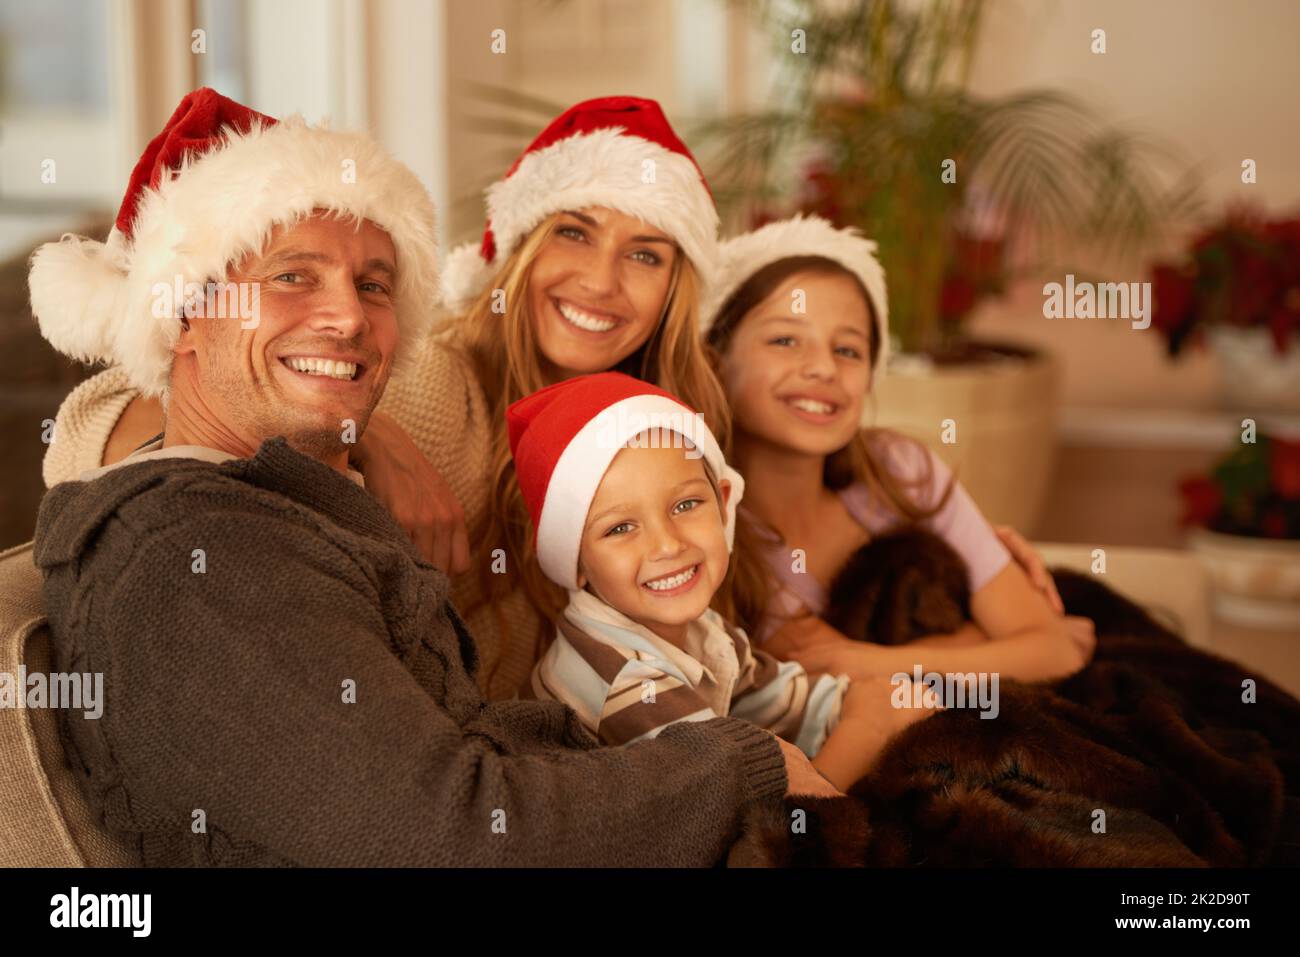 Momentos familiares en Navidad. Retrato de una joven familia feliz el día de Navidad. Foto de stock